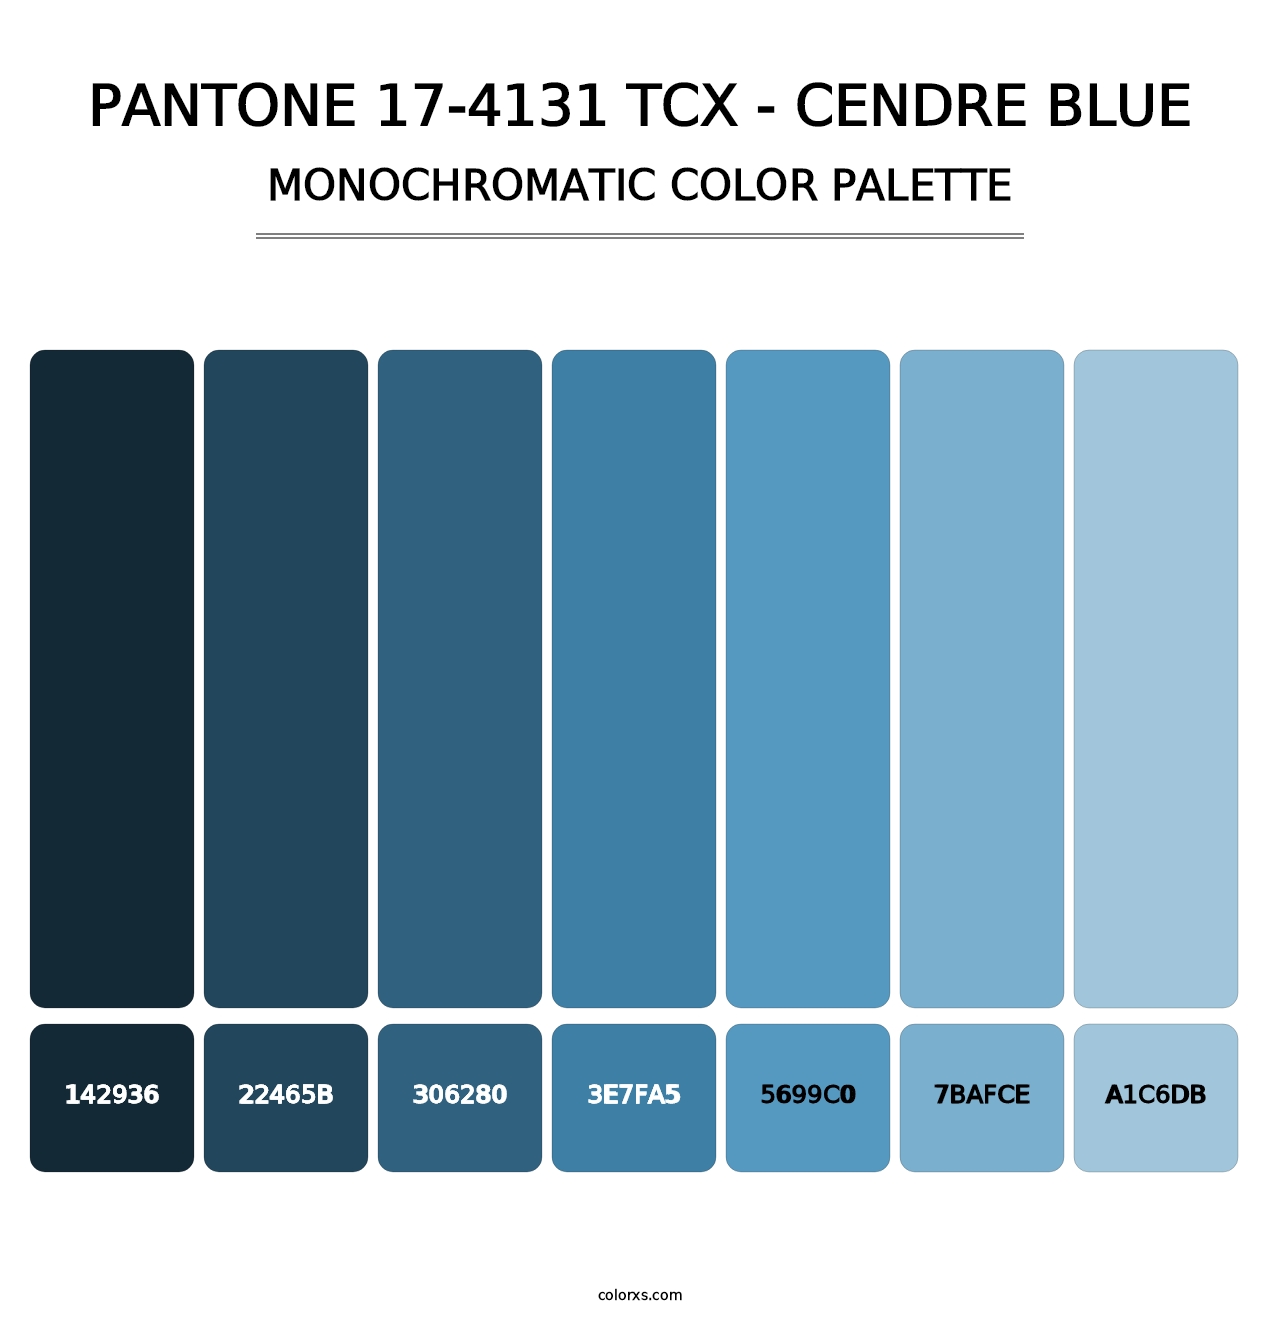 PANTONE 17-4131 TCX - Cendre Blue - Monochromatic Color Palette